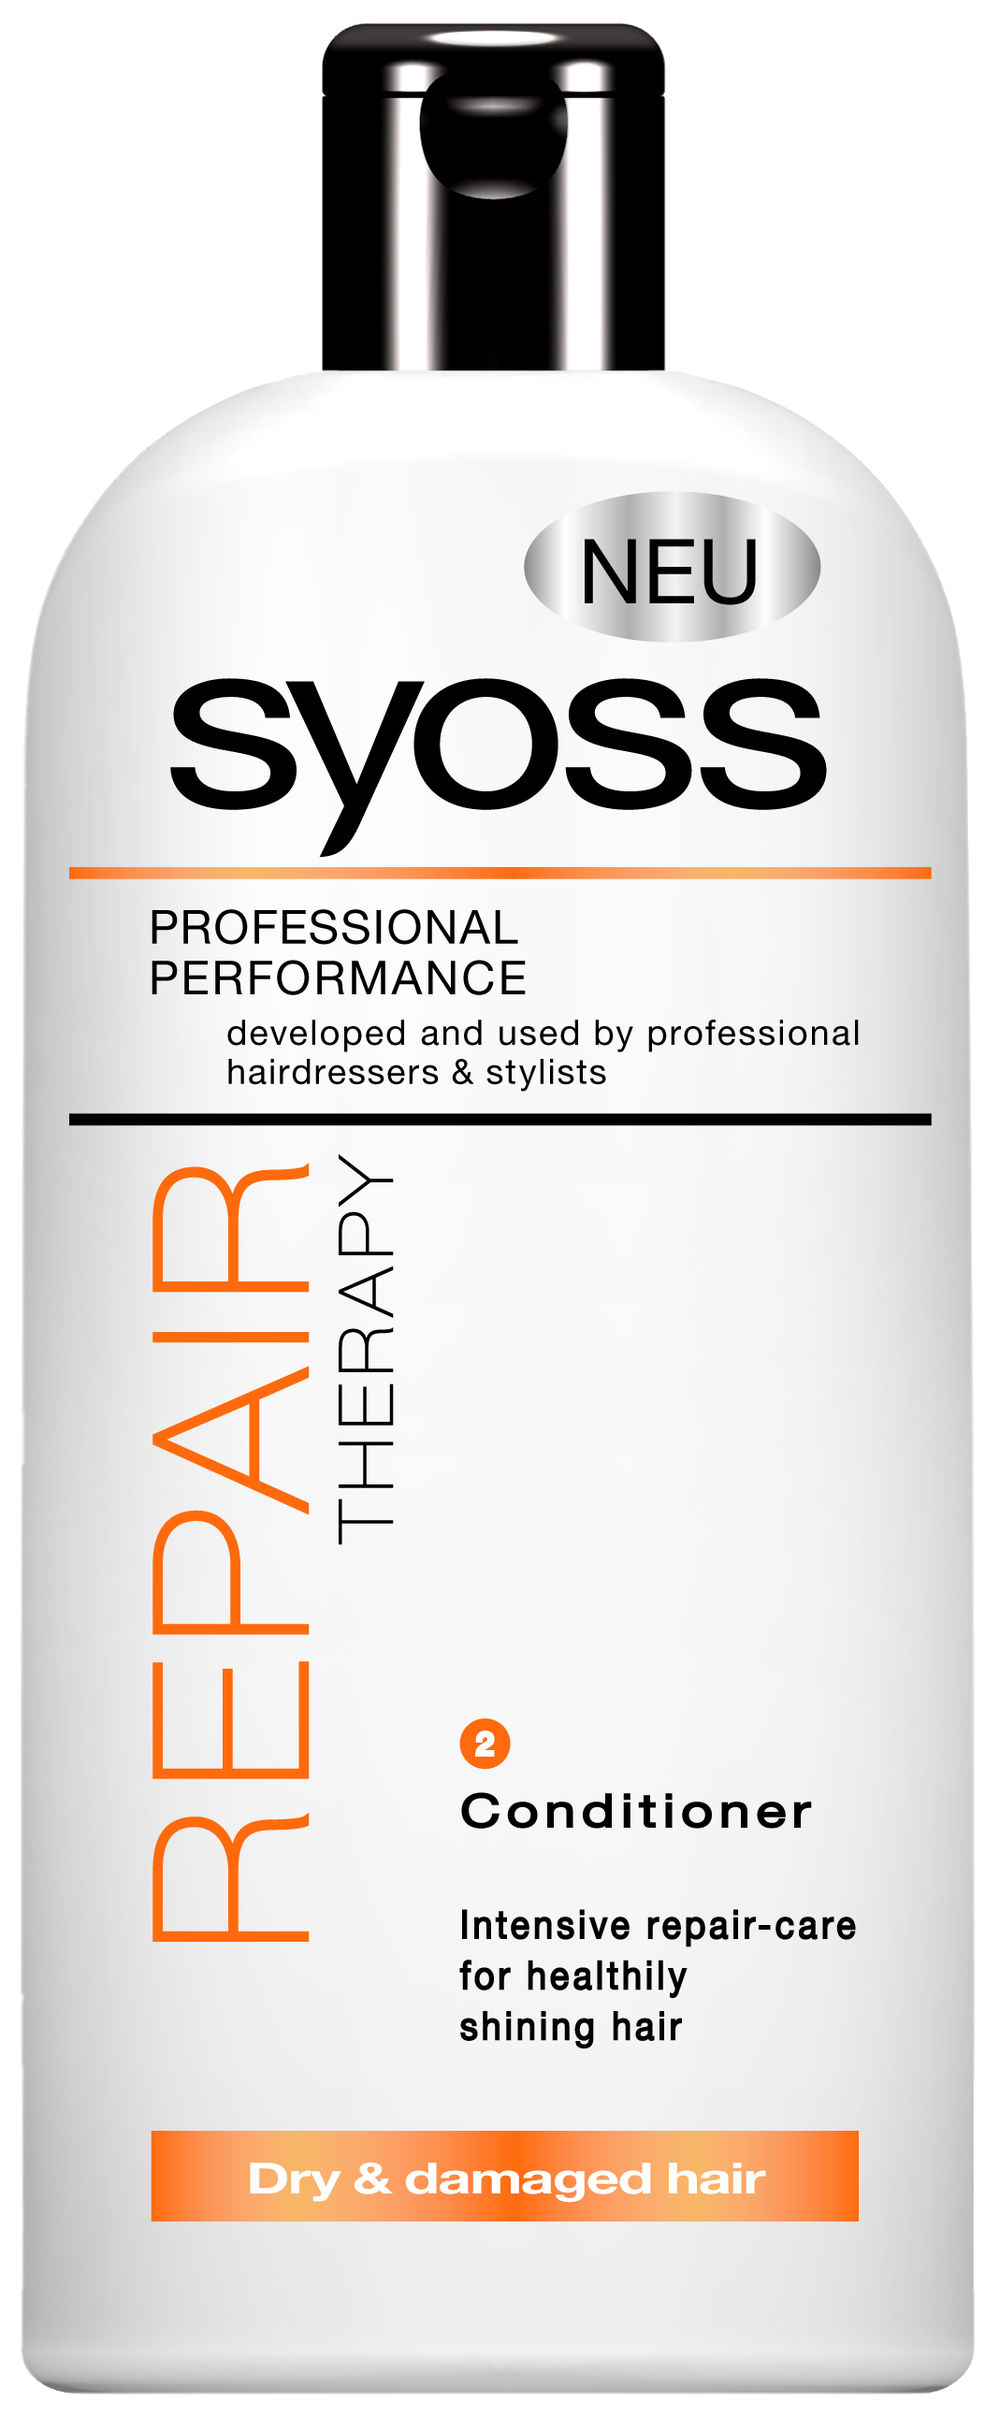 Profesionalna linija preparata za negu kose SYOSS od sada je dostupna i u maloprodajnim objektima po pristupačnim cenama